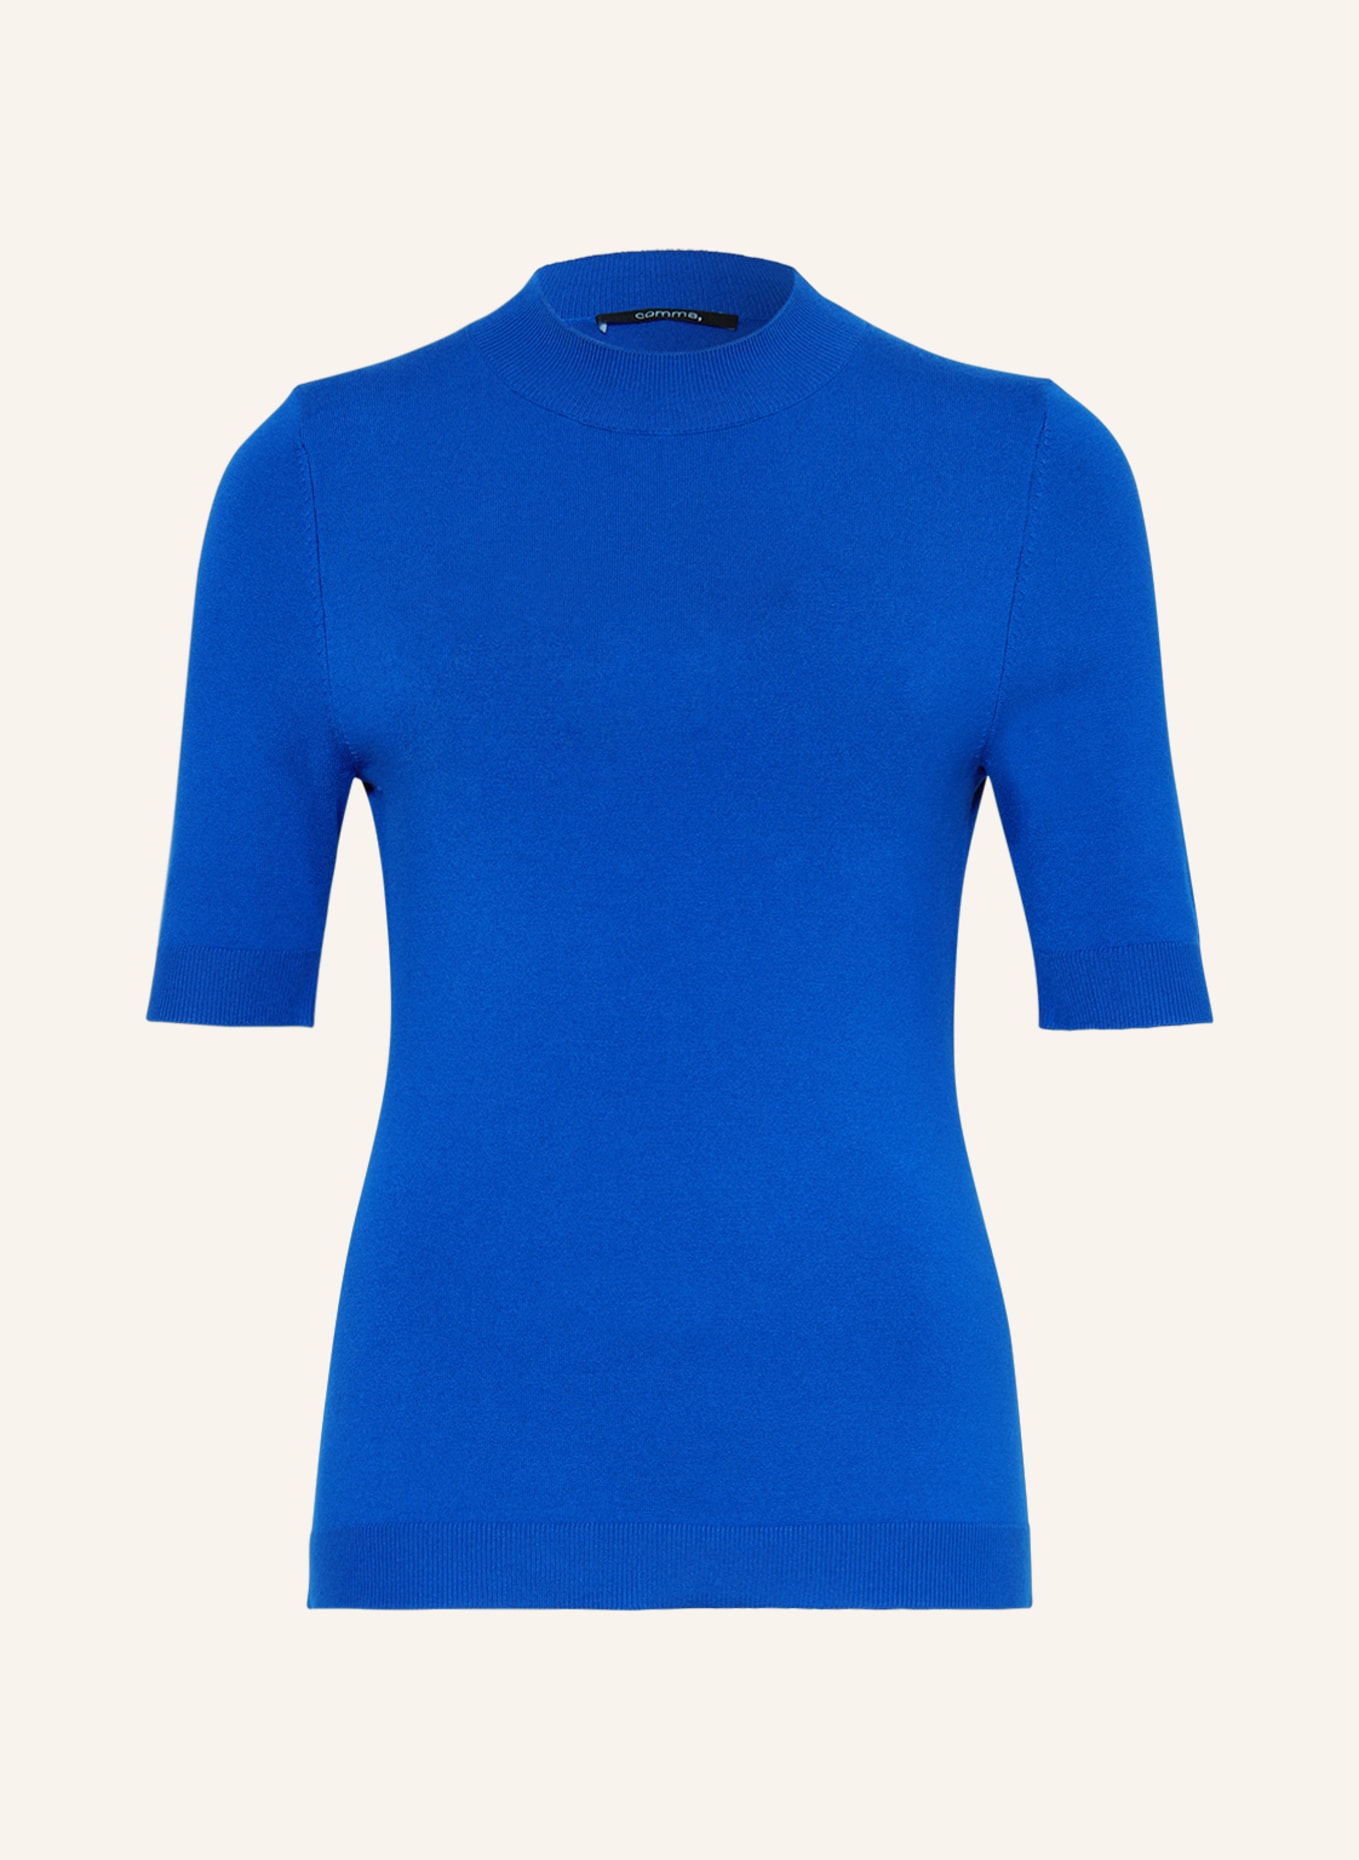 comma Knit shirt, Color: BLUE (Image 1)